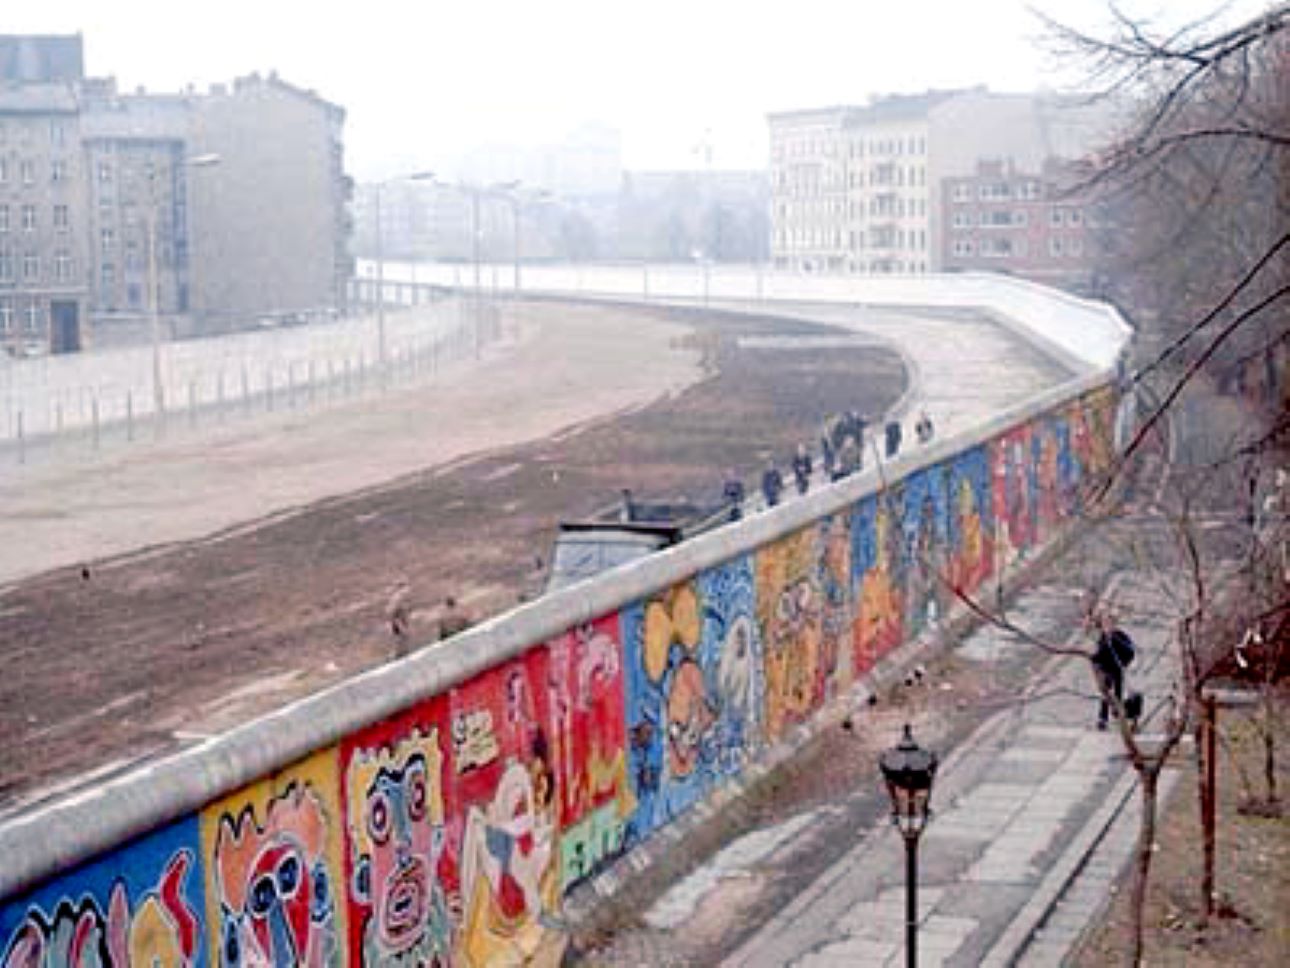 há 60 anos era erguido o muro de berlim símbolo da guerra fria jw